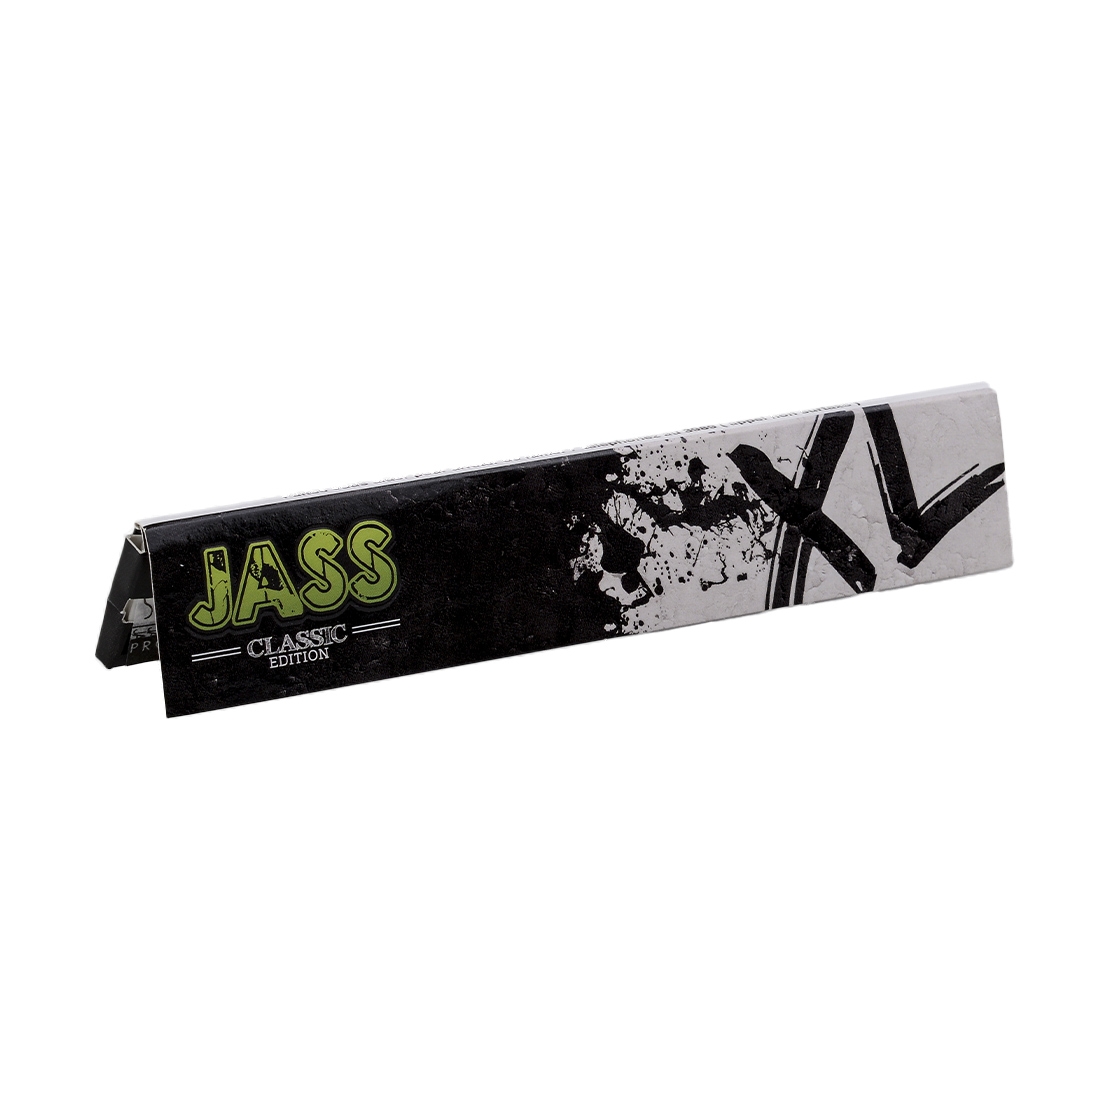 jass classic xl x50